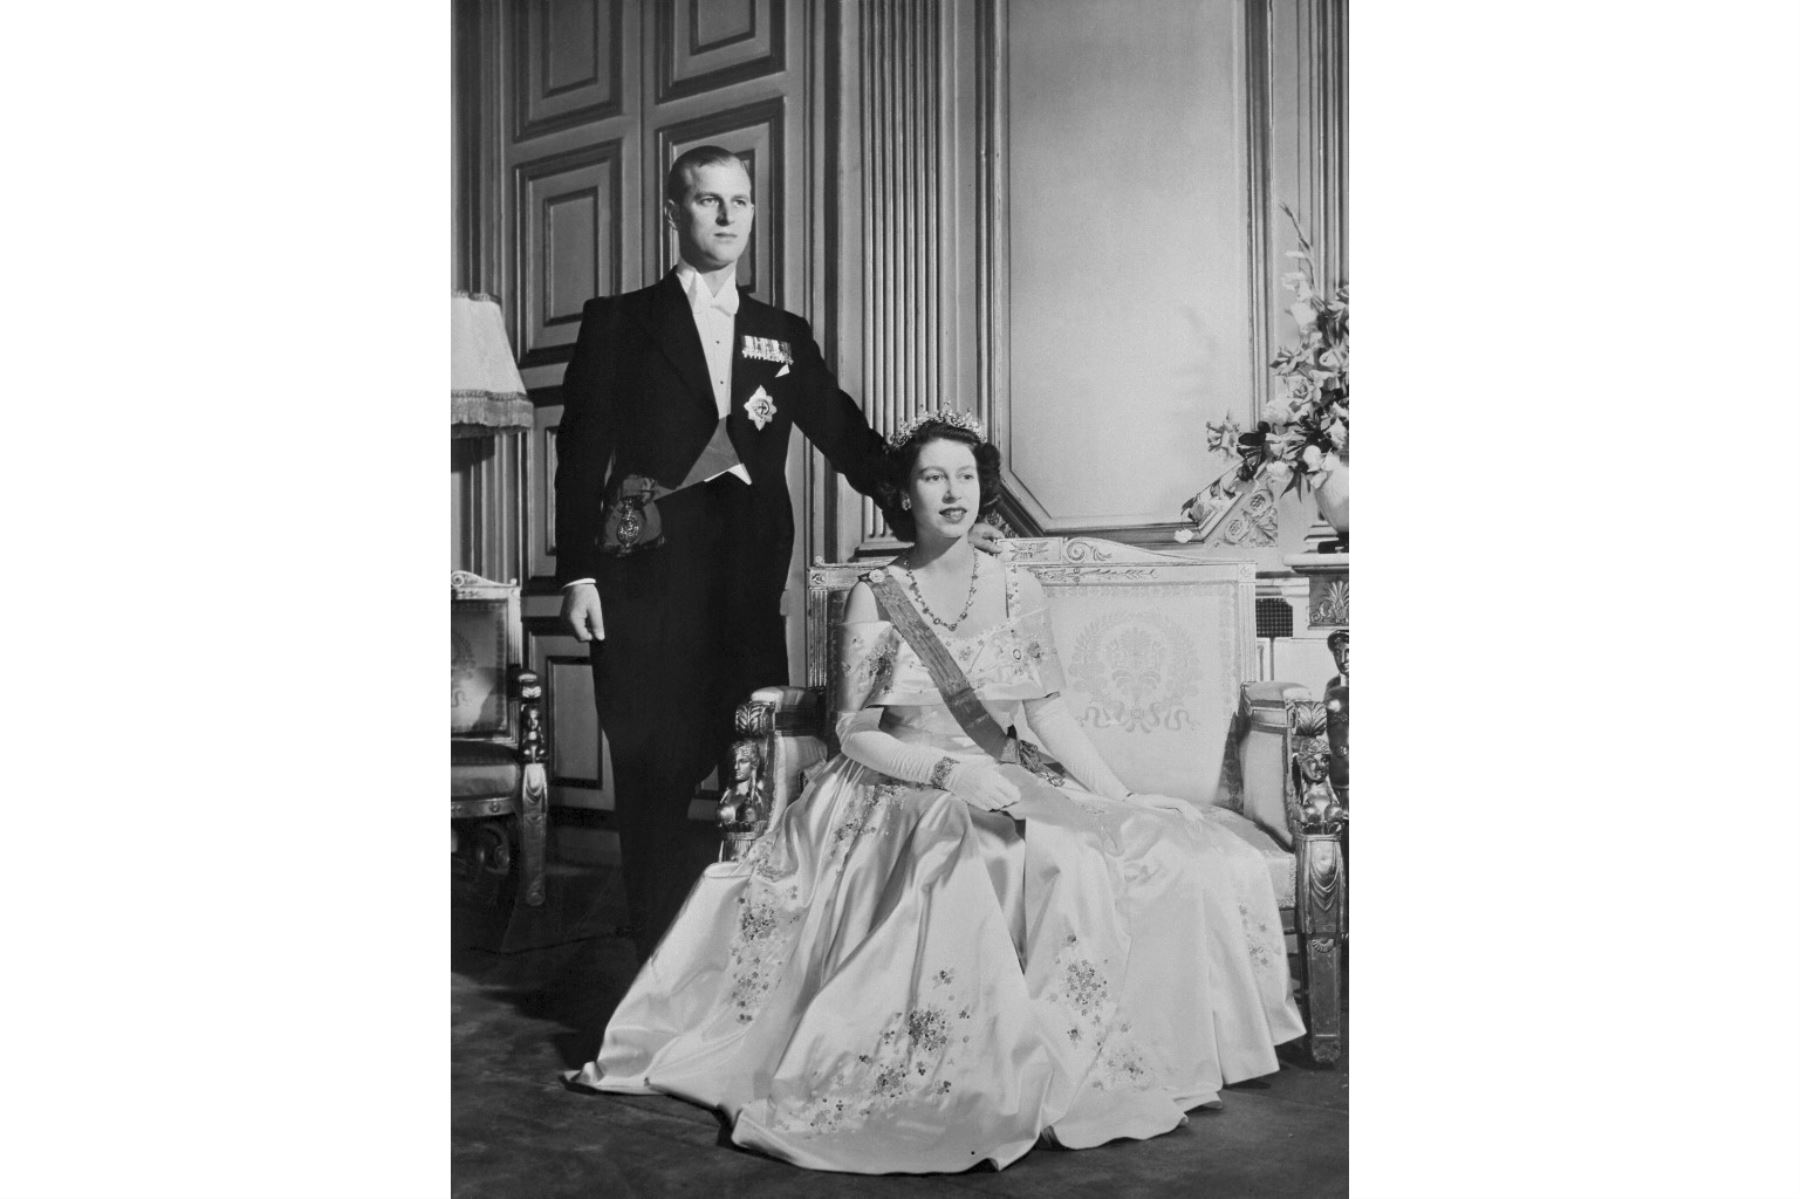 La princesa Isabel de Gran Bretaña (futura reina Isabel II de Gran Bretaña) y Felipe el duque de Edimburgo posan en el Palacio de Buckingham, Londres en 1948. Foto: AFP